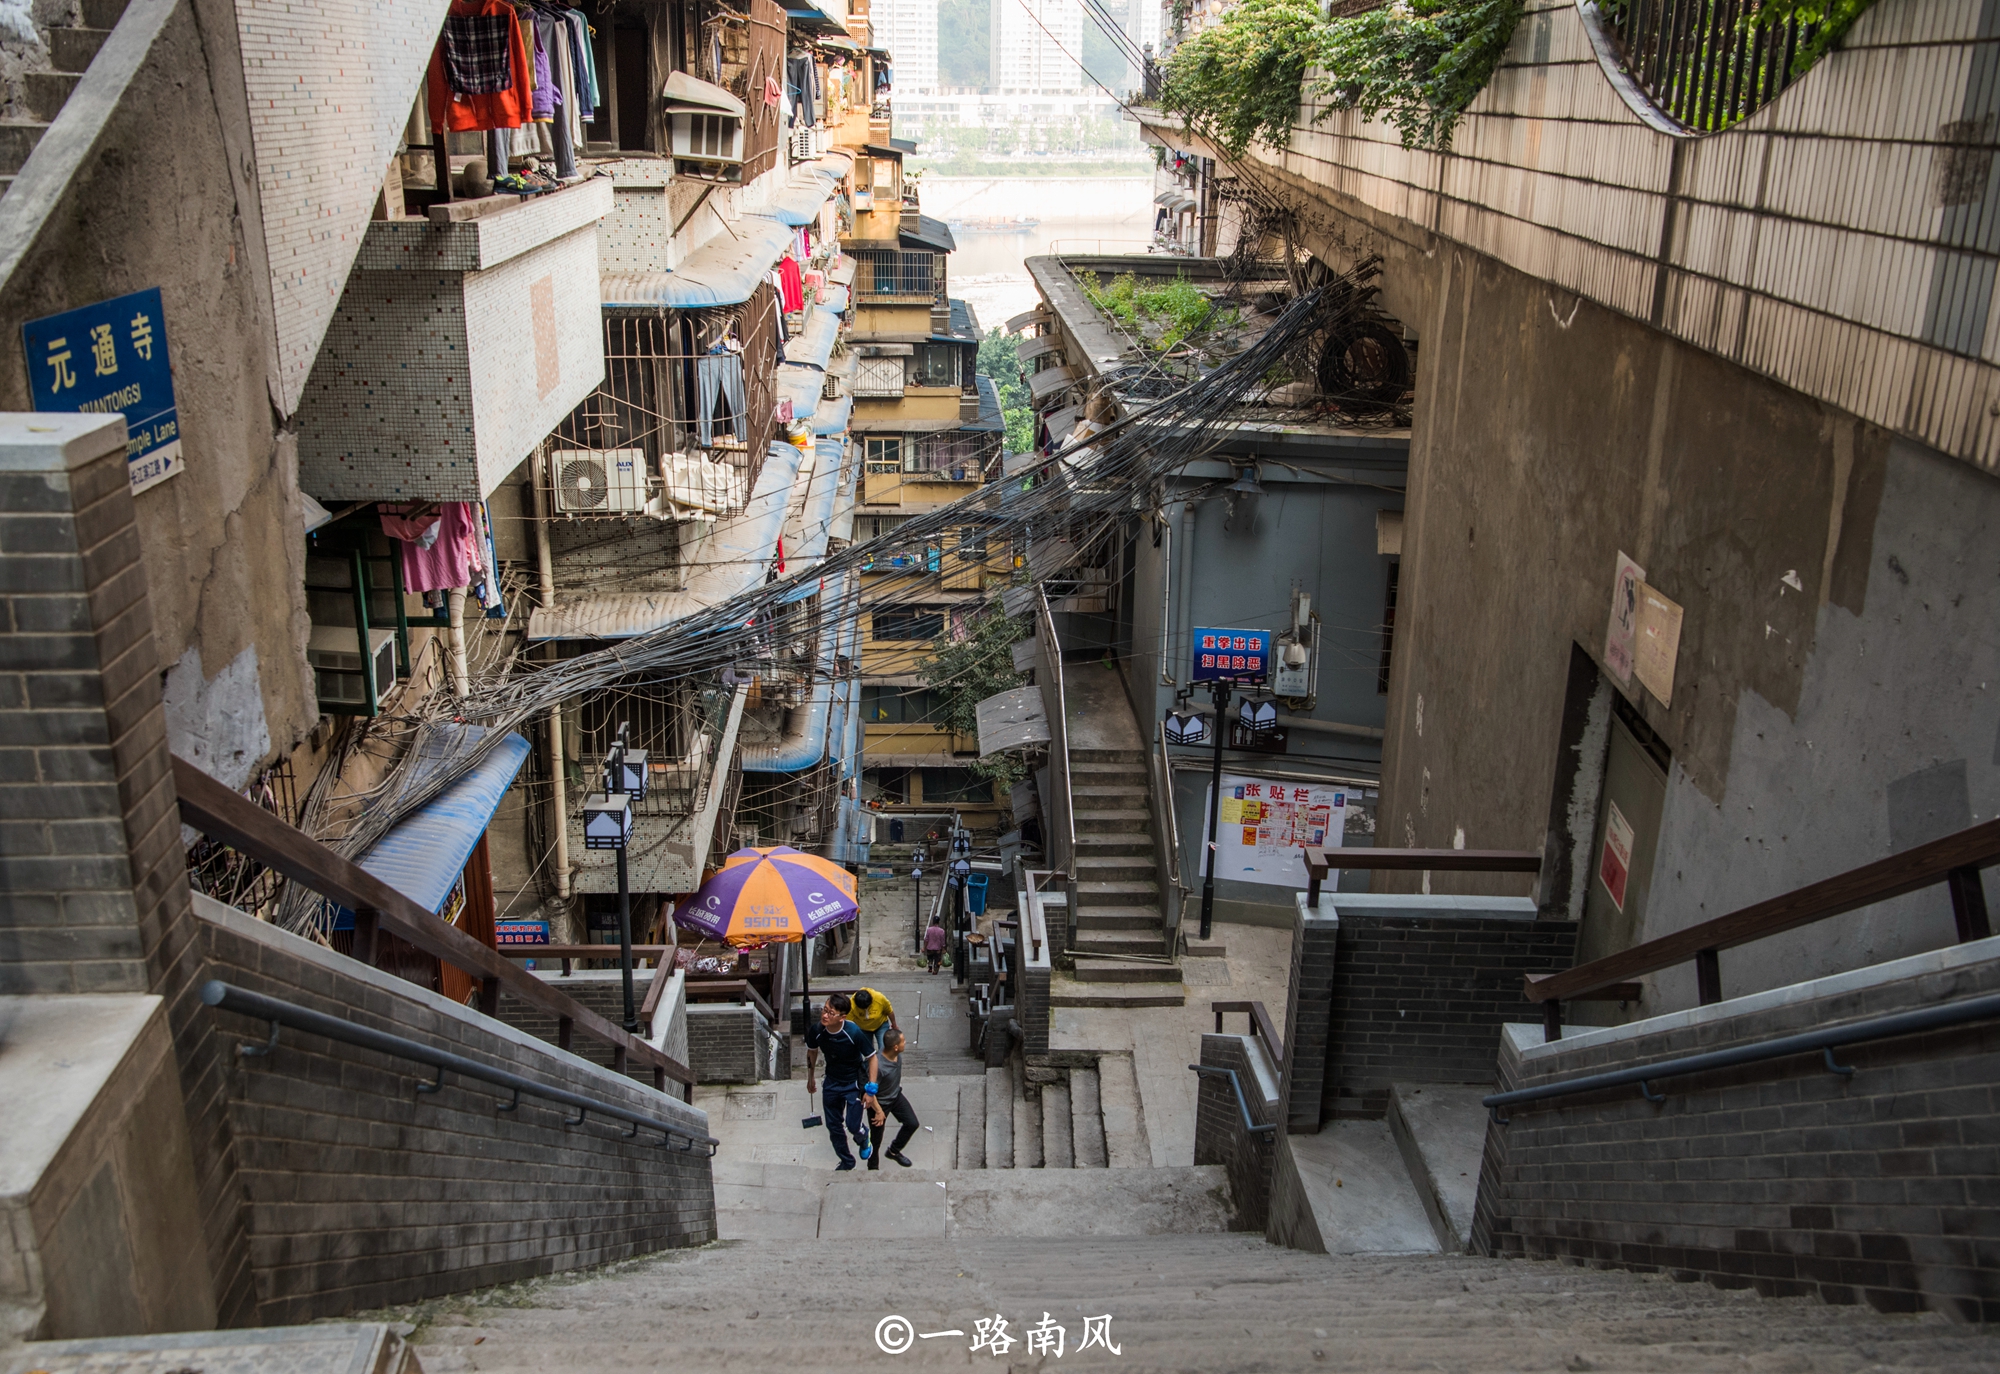 看到登天一样的阶梯,终于明白在重庆为什么看不到单车了!